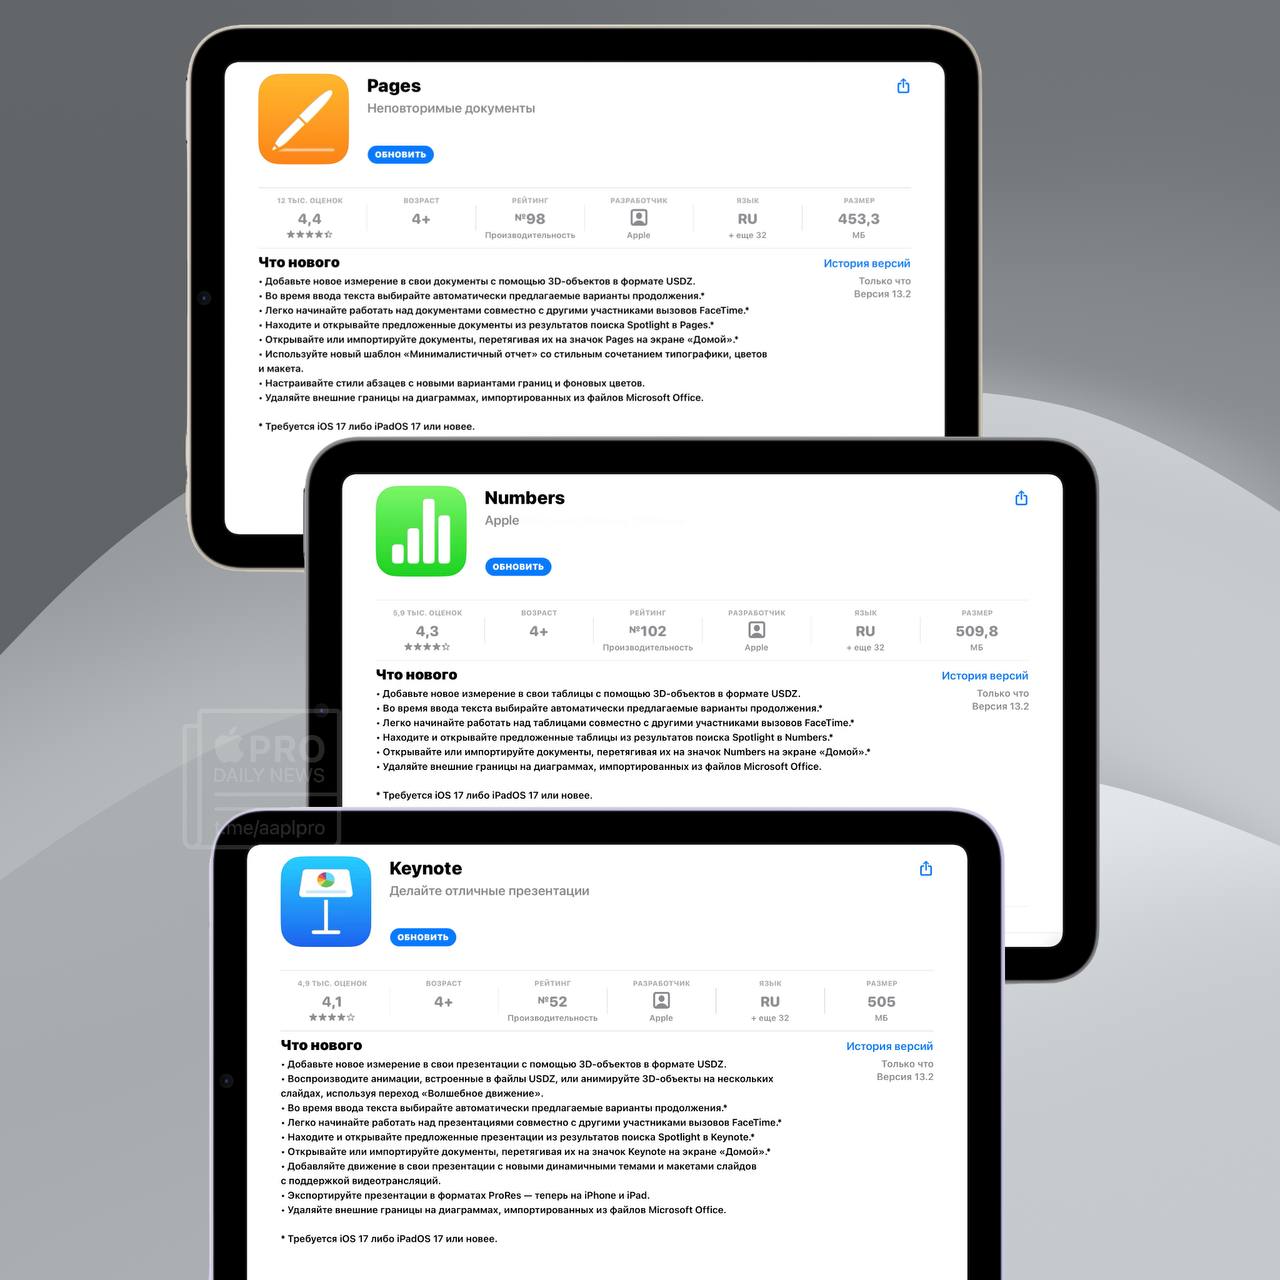 Полный перечень новшеств по каждому приложению доступен в App Store